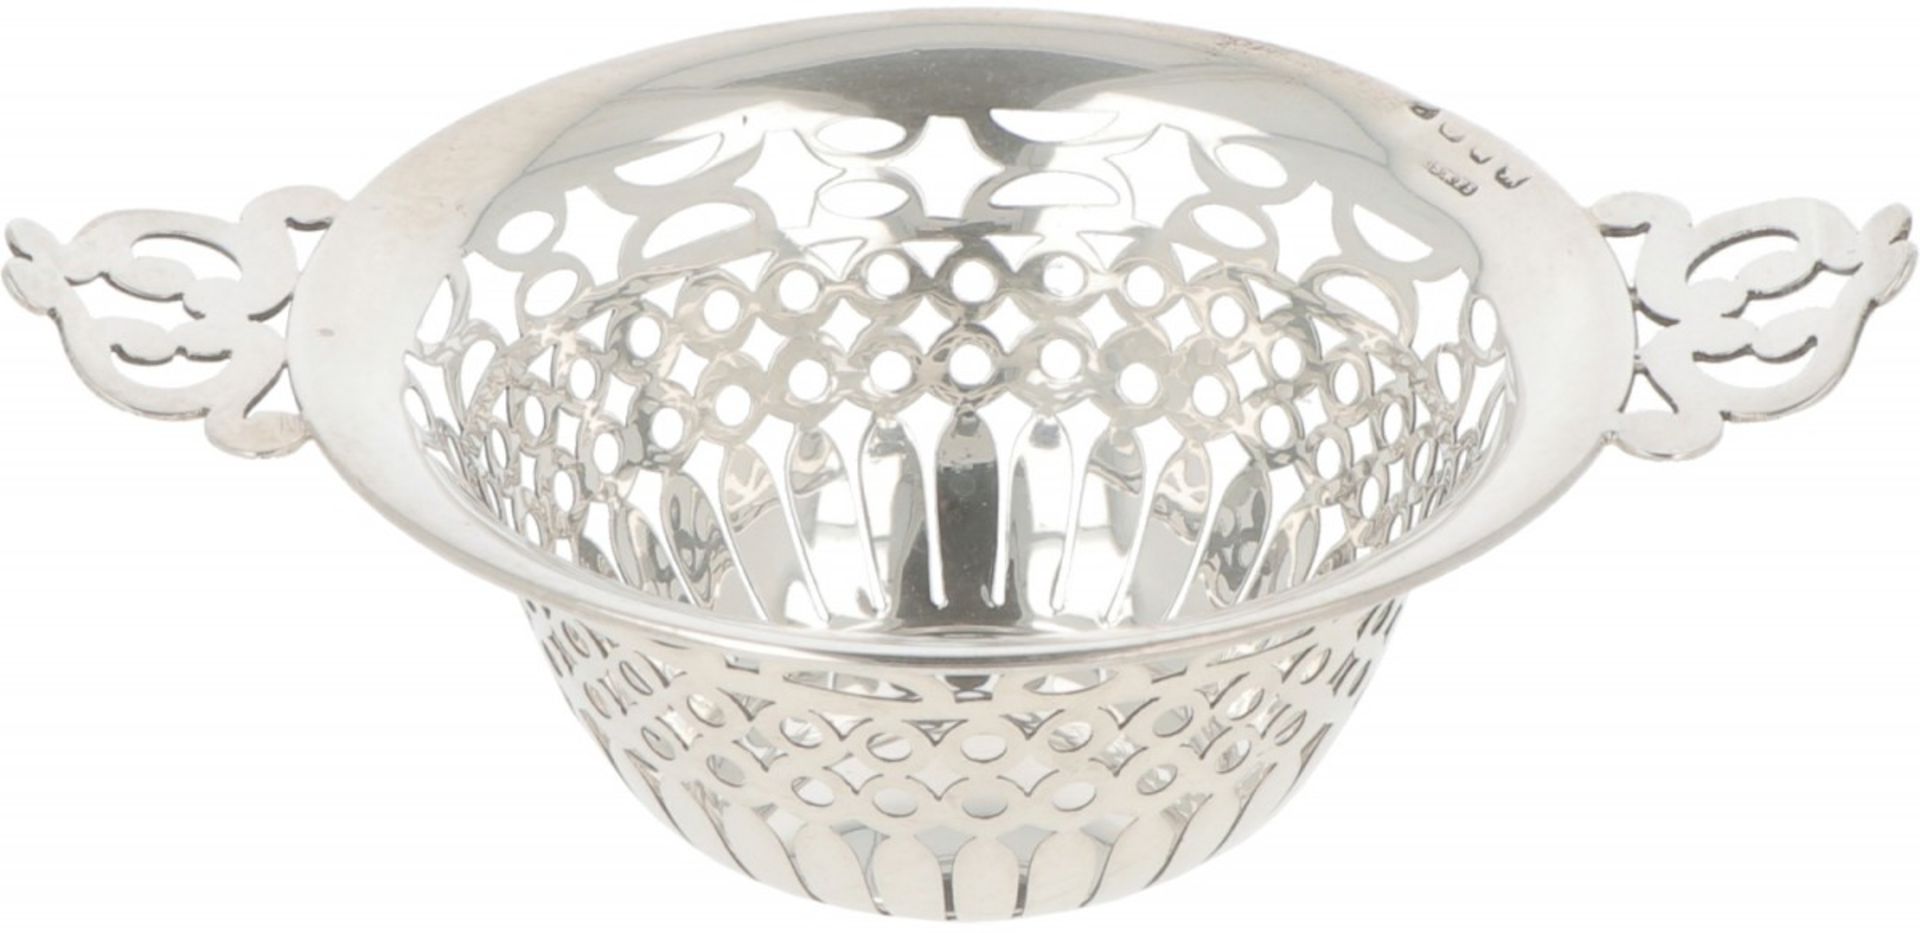 Pastille basket silver.